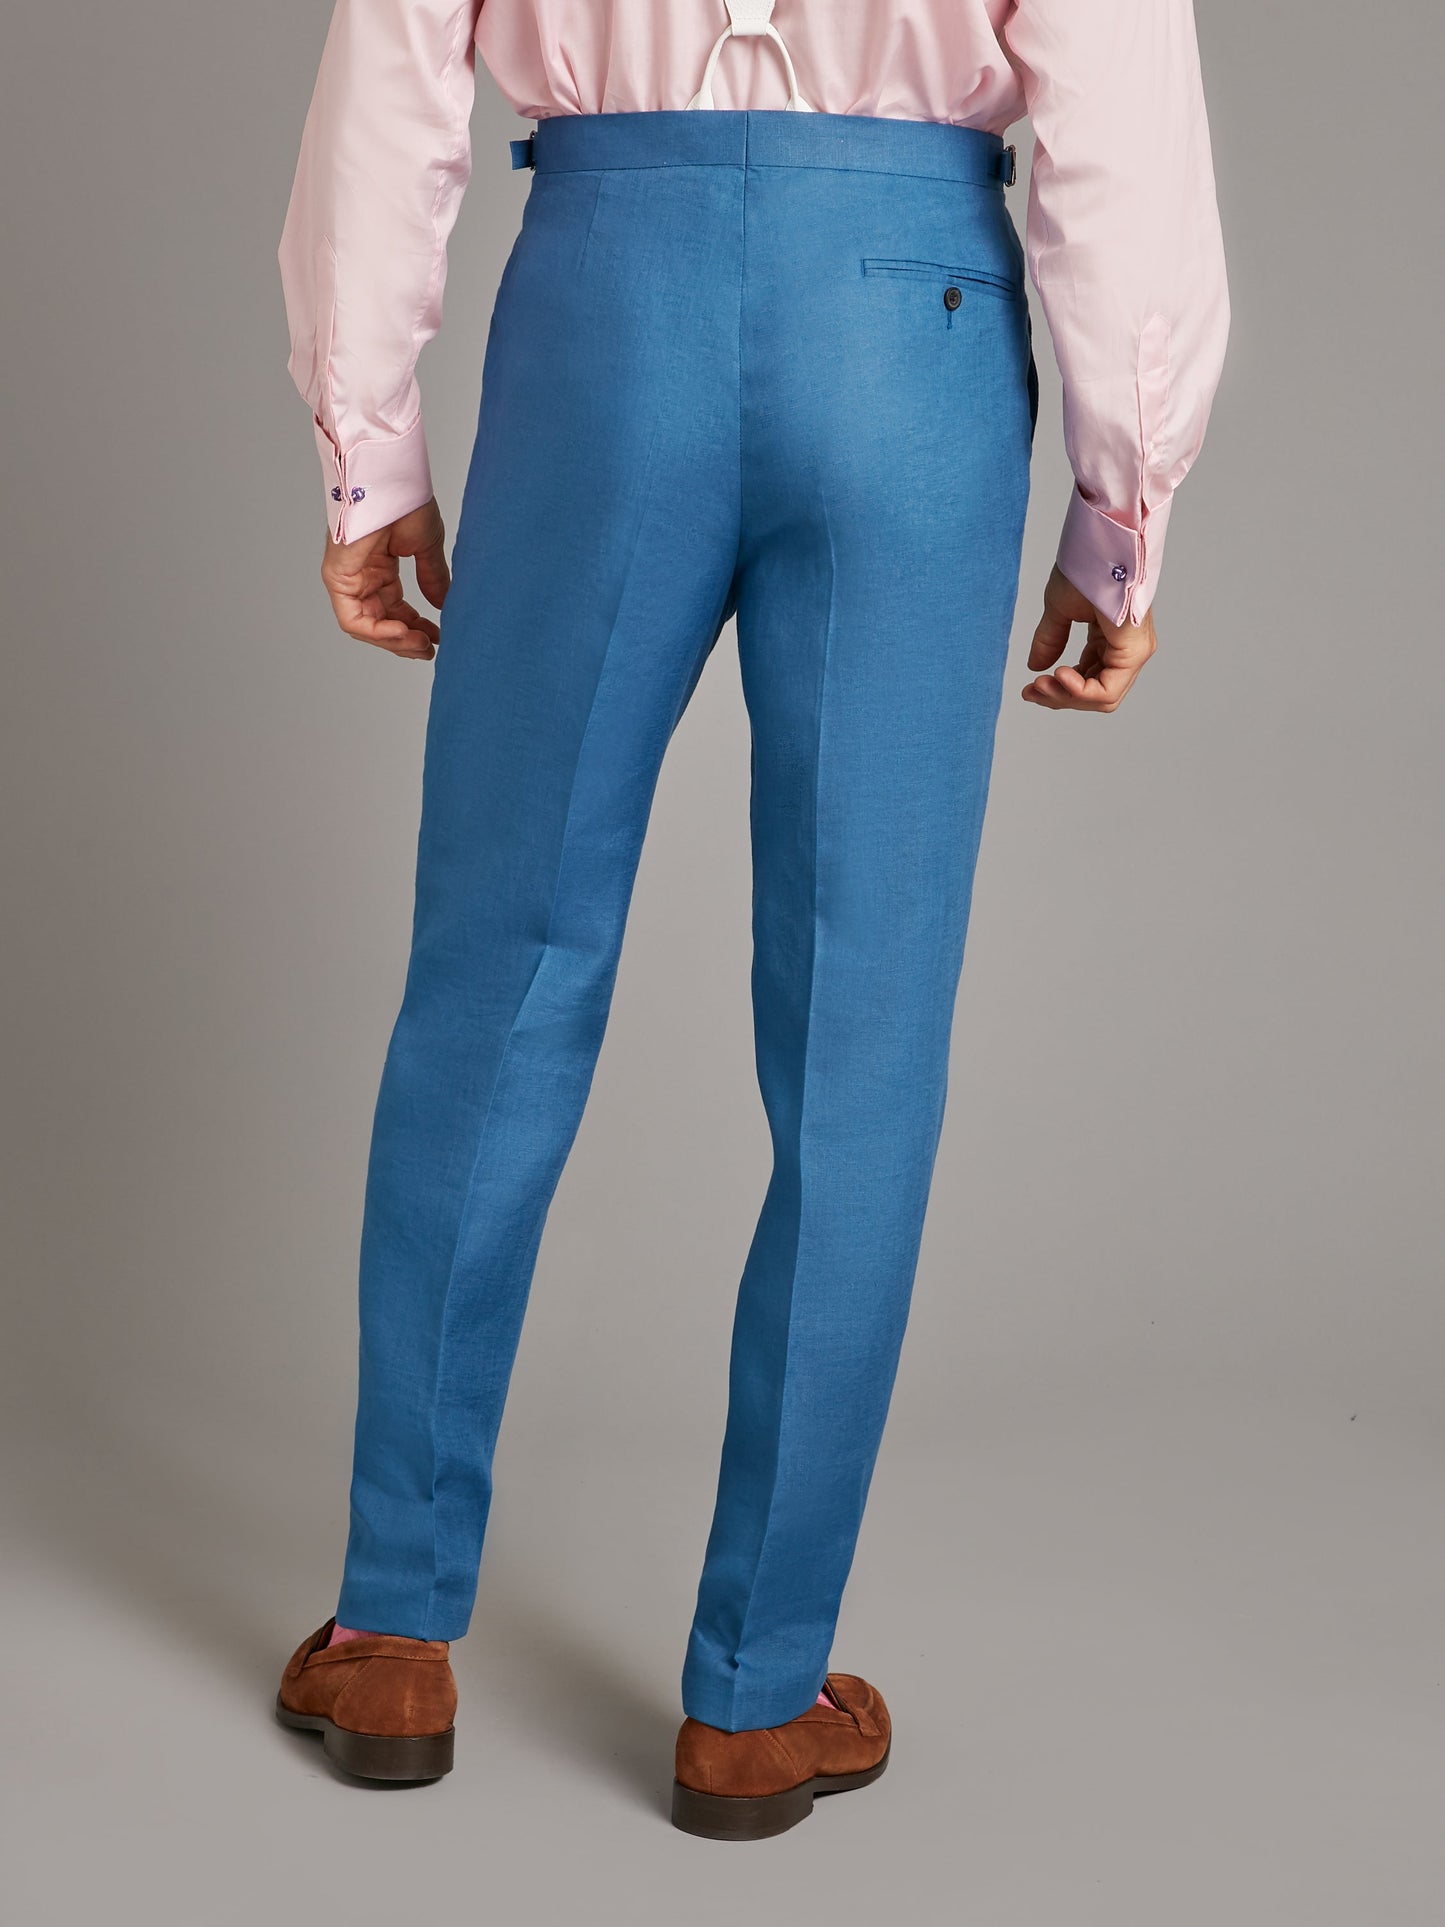 Carlyle Suit - Borage Blue Linen